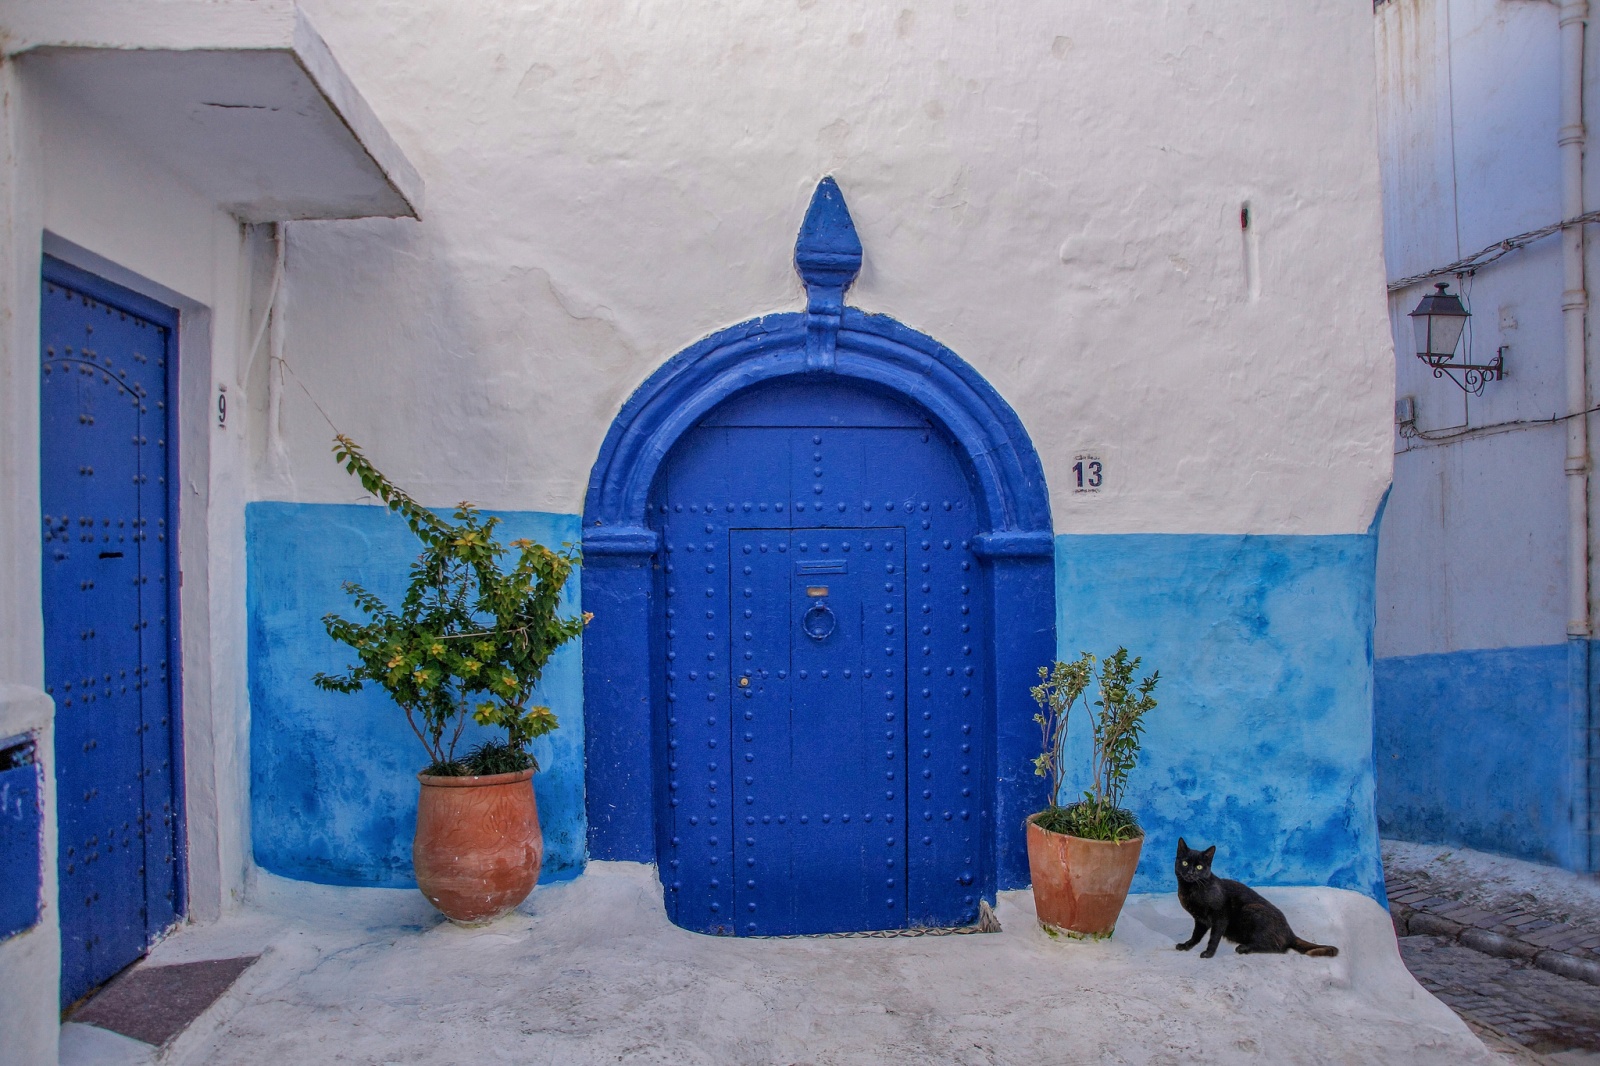 13 Black Cat streetlife in Rabat Morocco